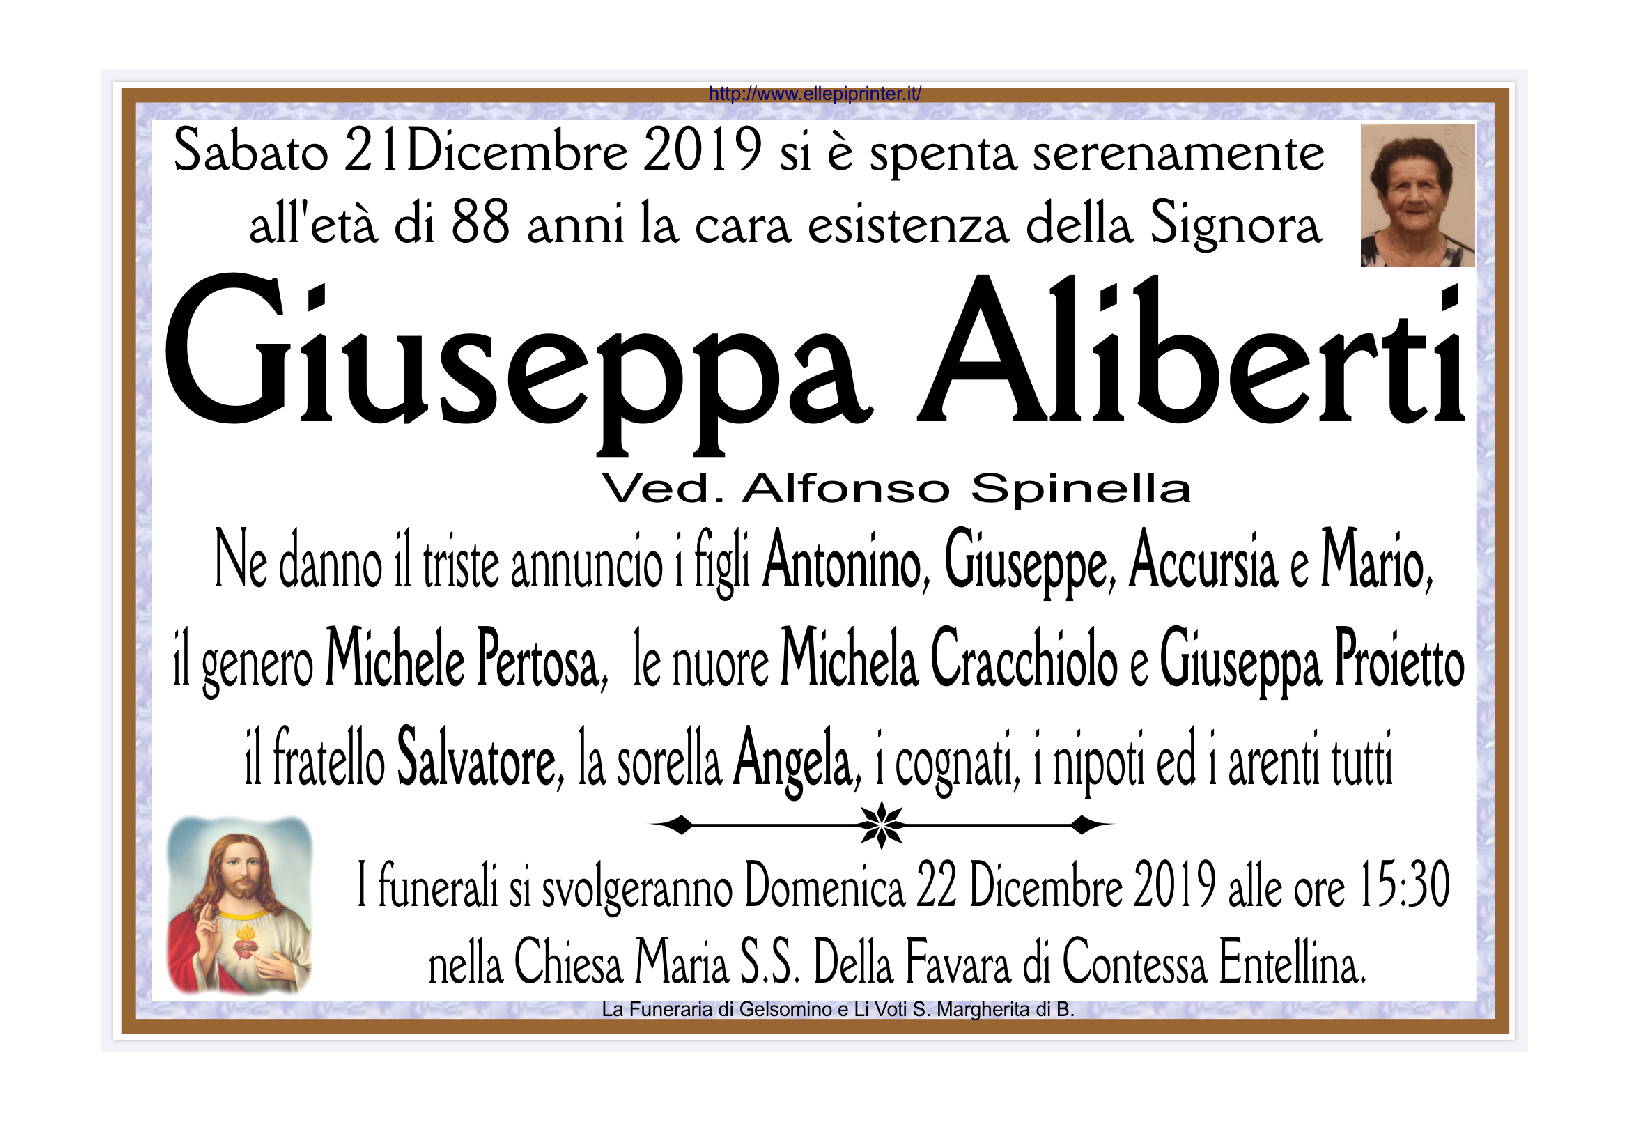 Giuseppa Aliberti